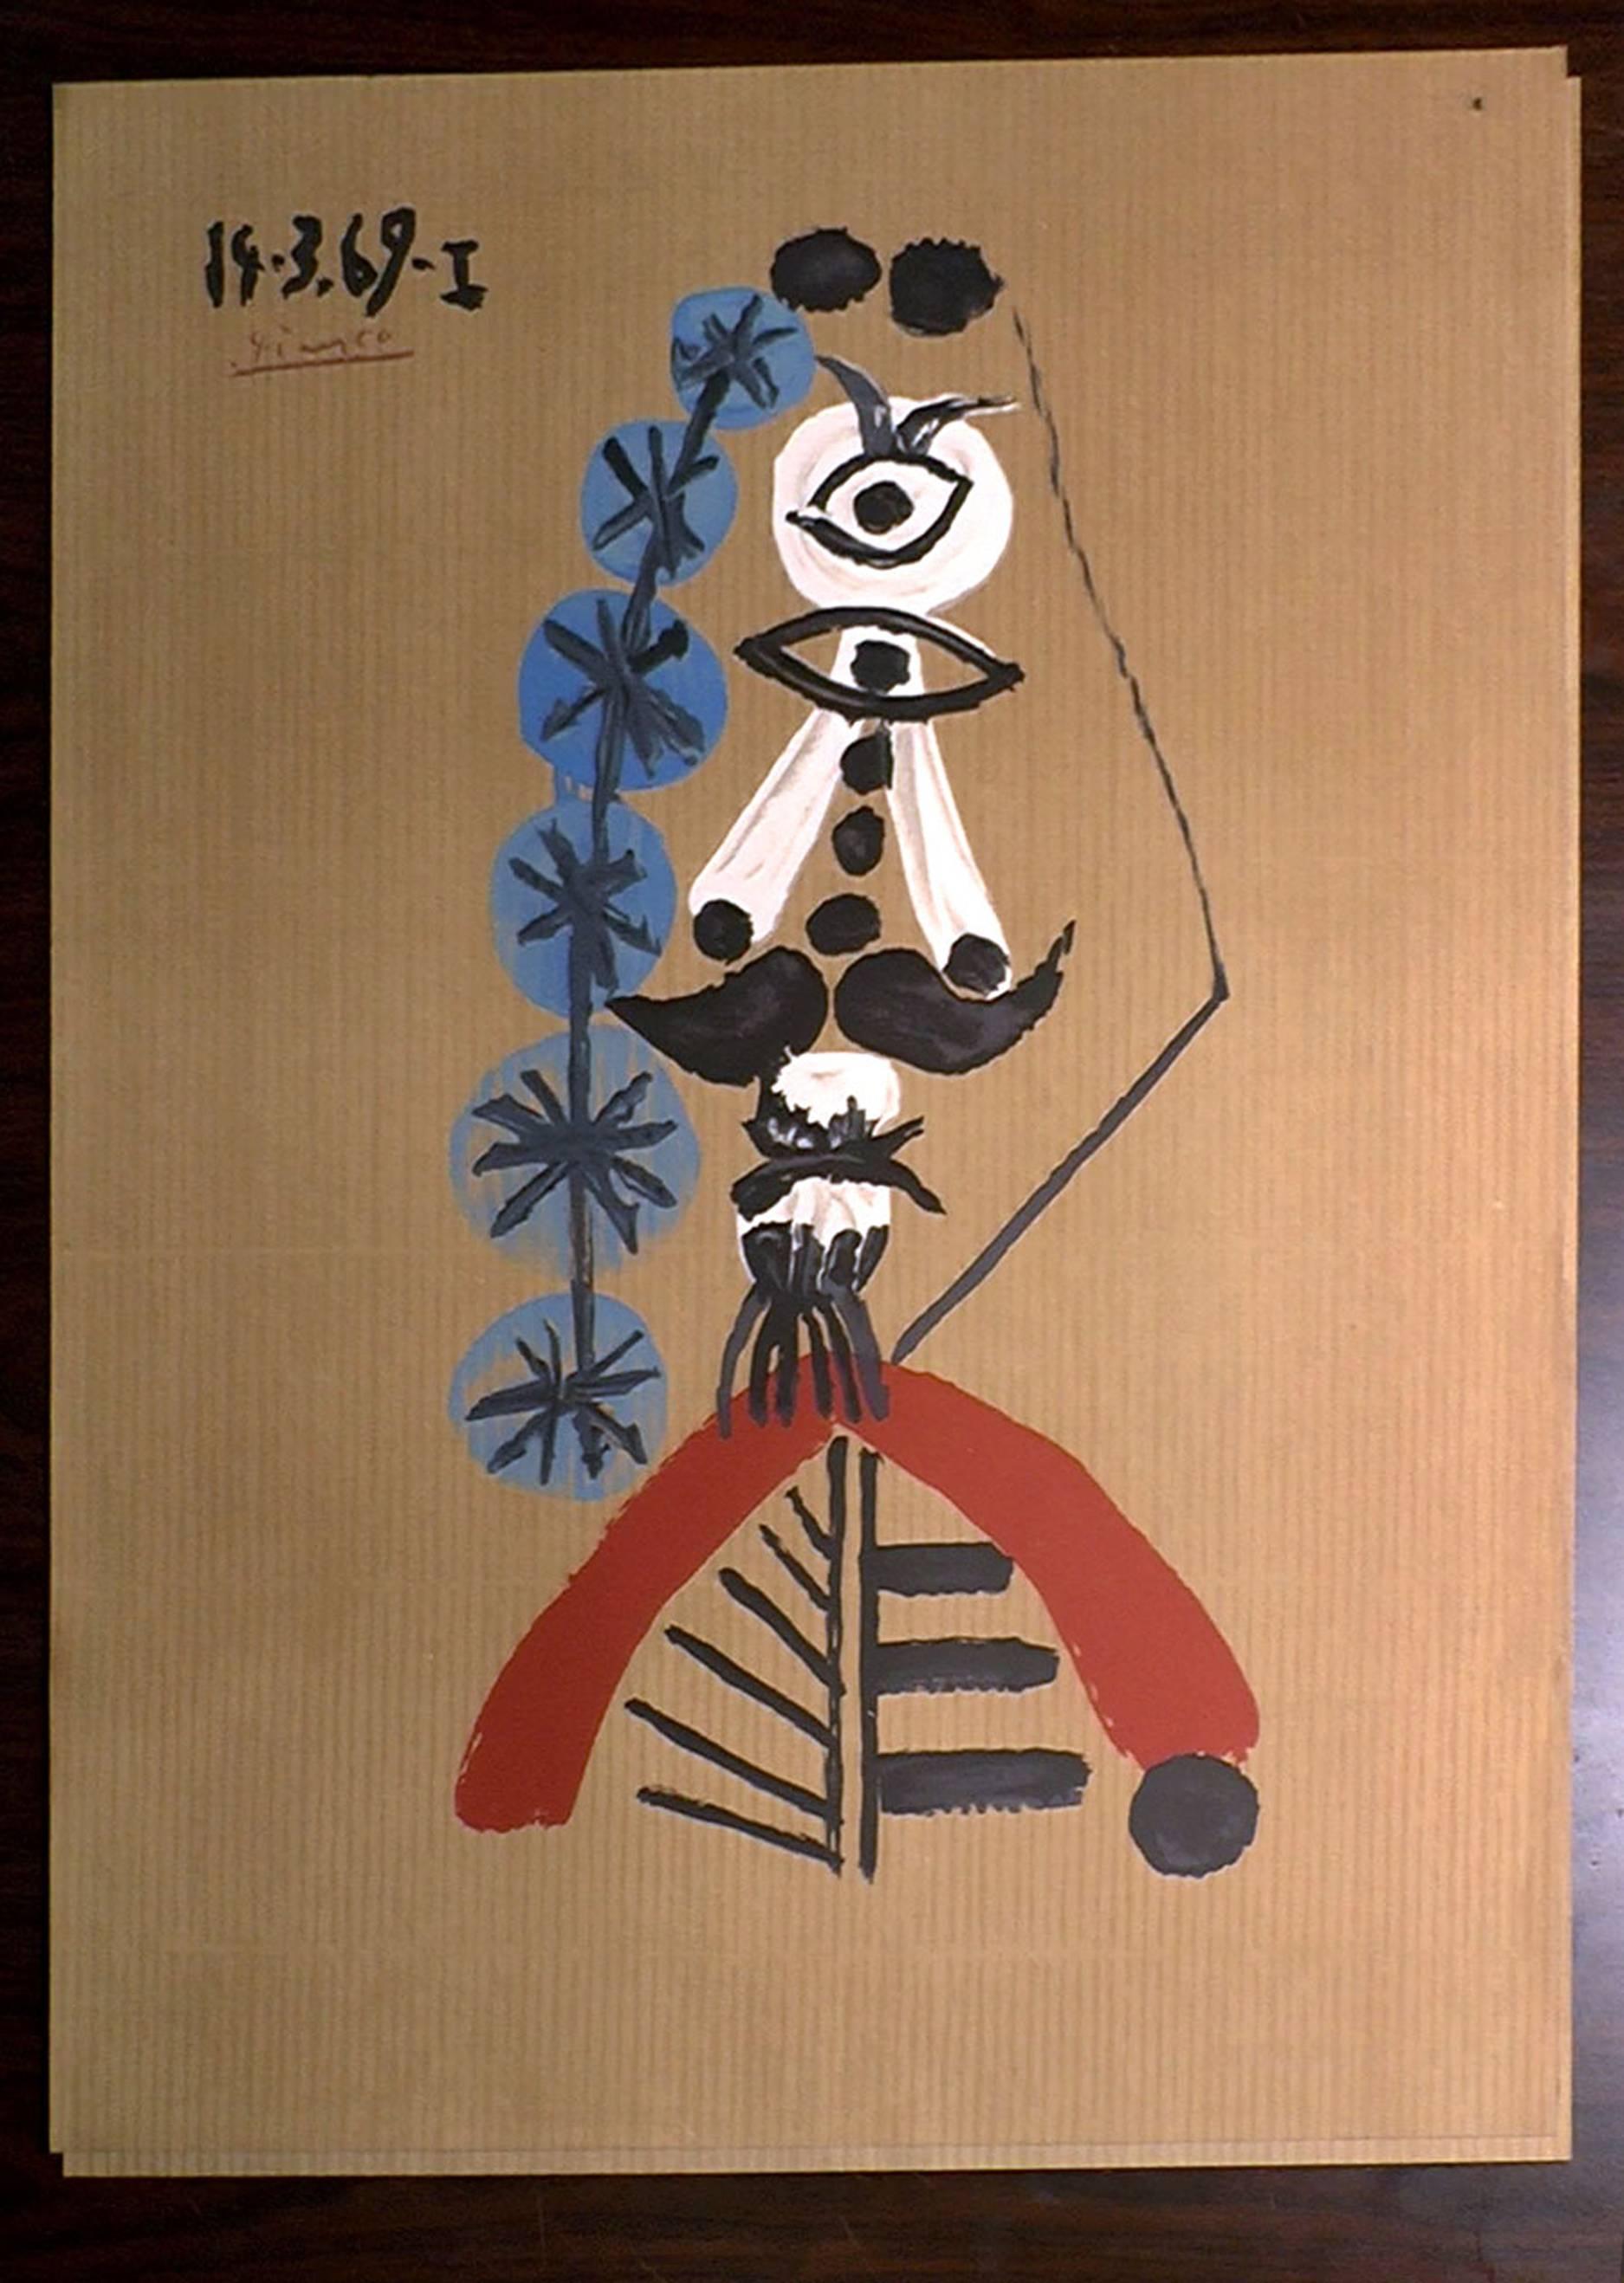 Superbe et vibrante lithographie originale de Picasso signée et datée Portrait imaginaire:: France:: 1969
Réalisée dans un papier spécial et magnifique de couleur brune
Fabricant de lithographies : Salinas
Papier : Papier Vélin d'Arches. 
    